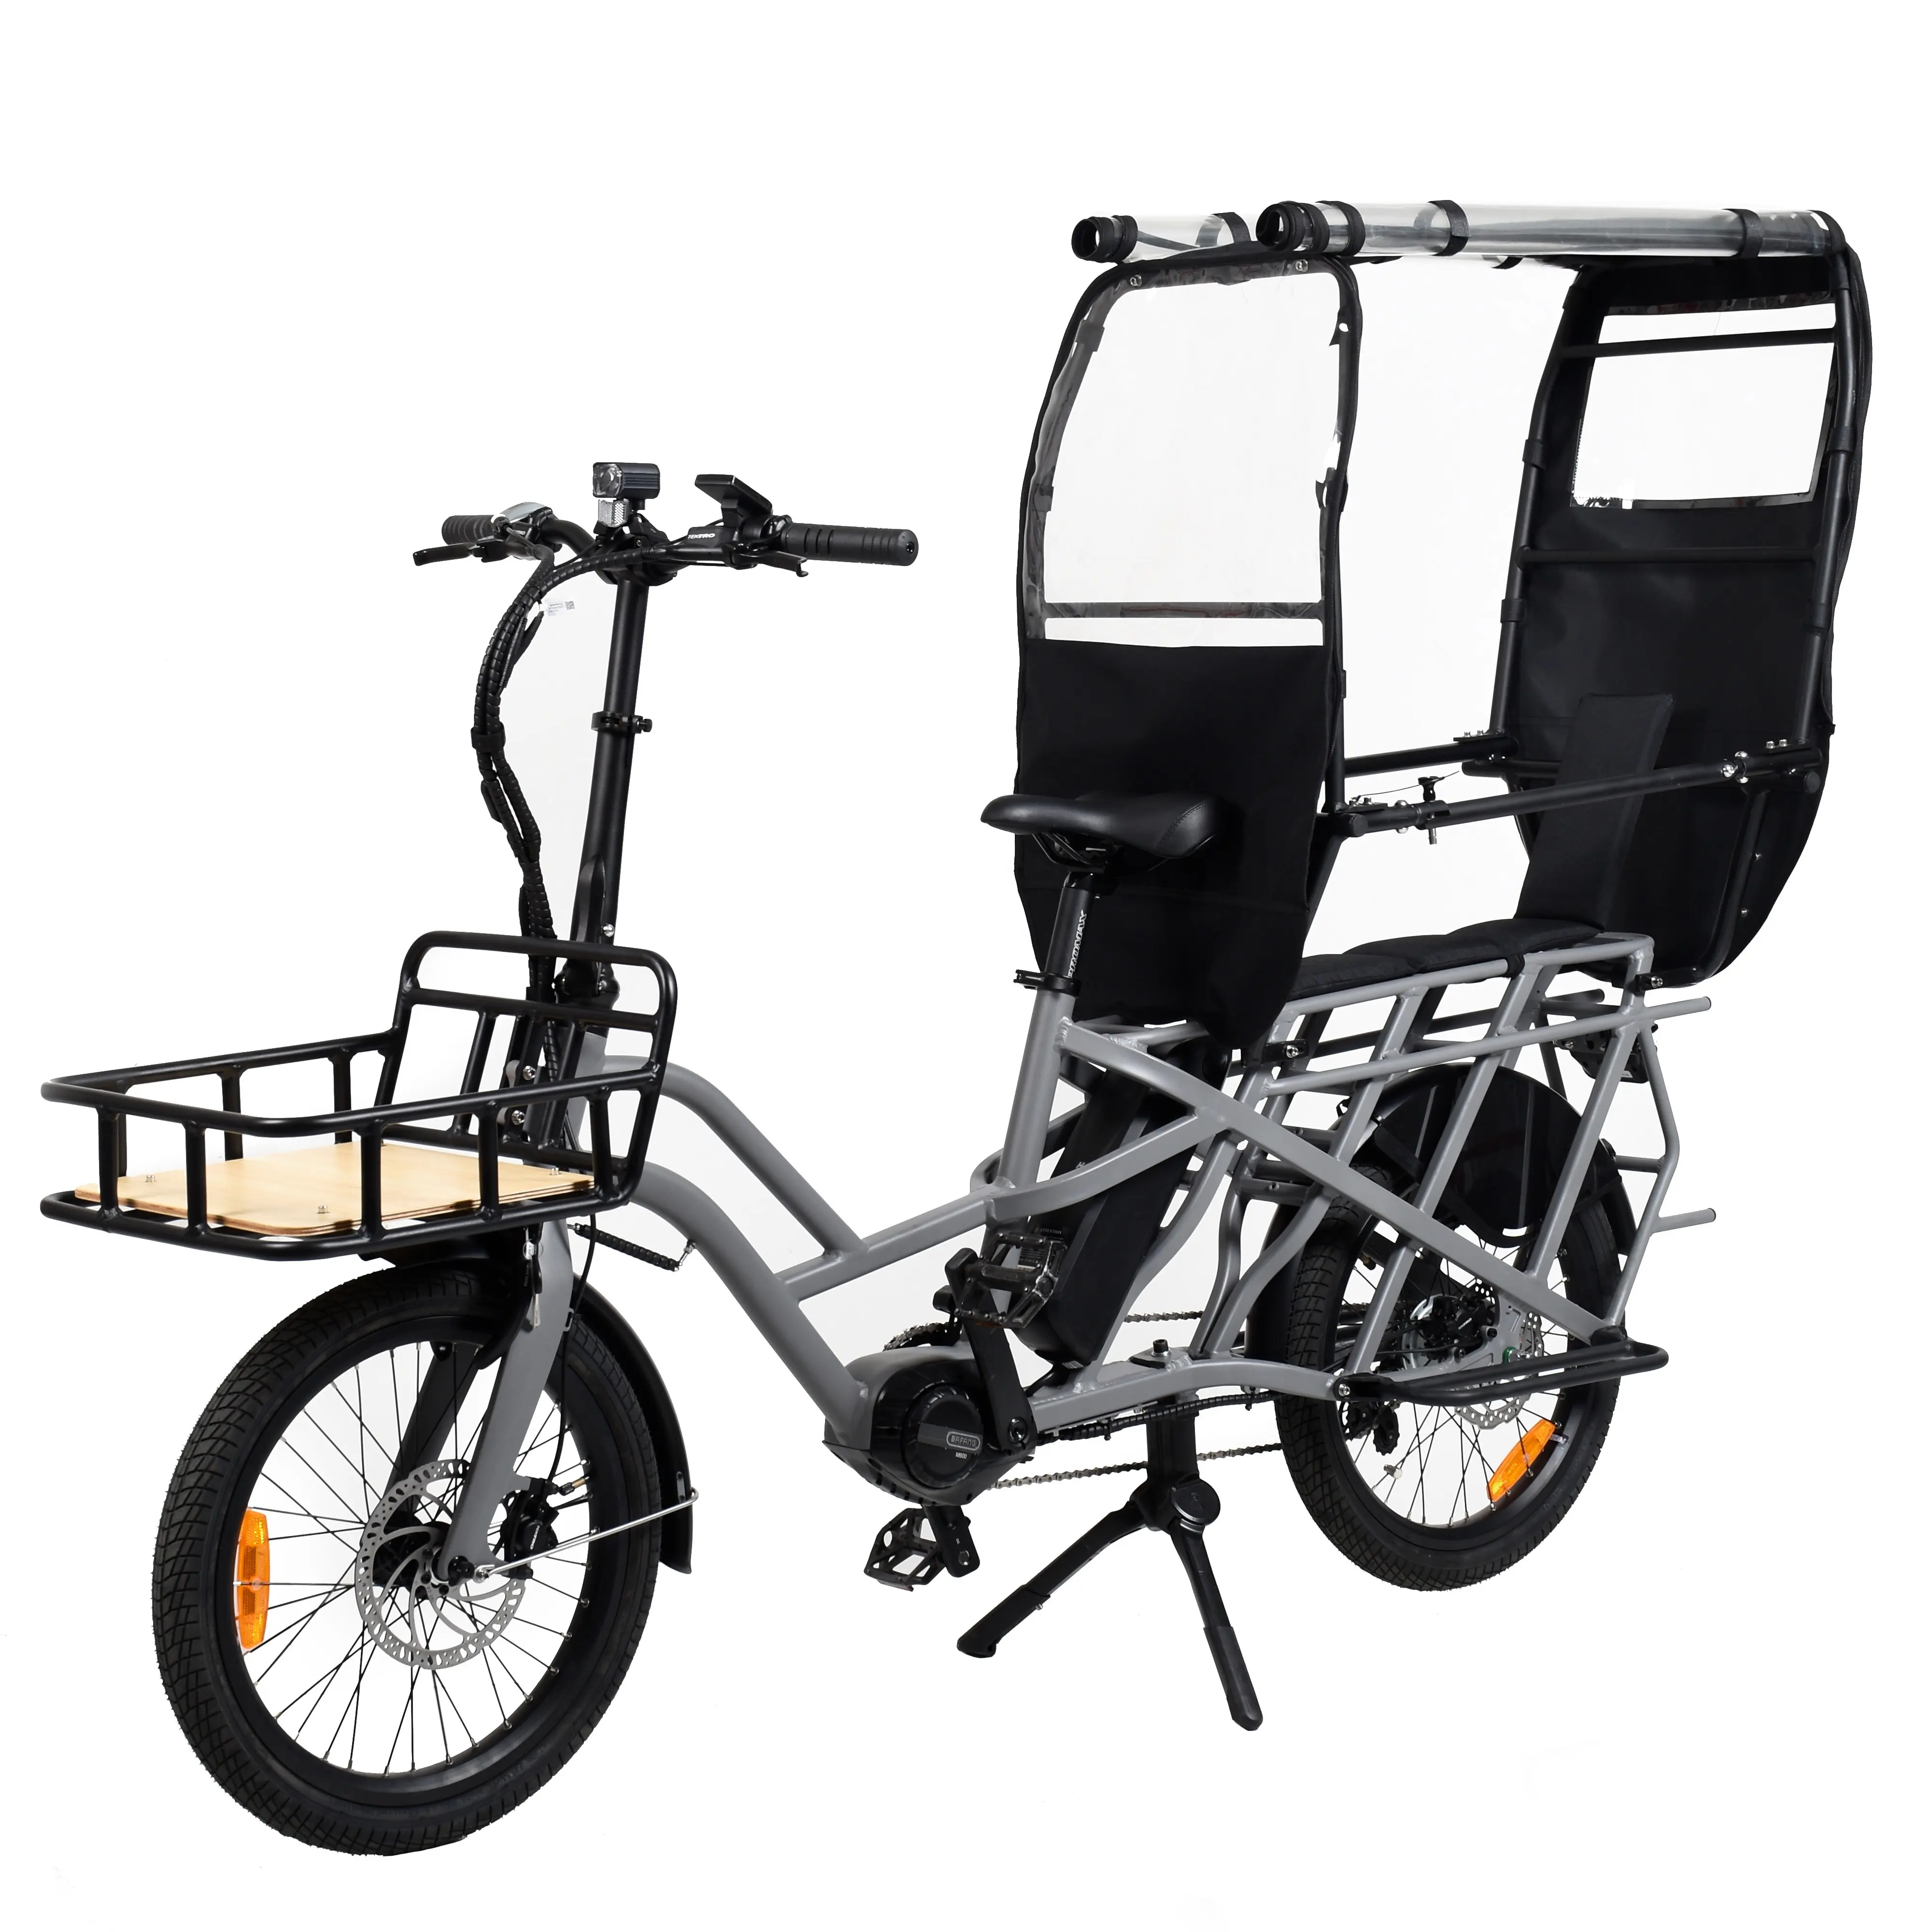 Bicicleta eléctrica de cola larga, bicicleta de carga eléctrica con batería extraíble, bicicleta de carga eléctrica de 500W para bicicleta eléctrica de cola larga familiar